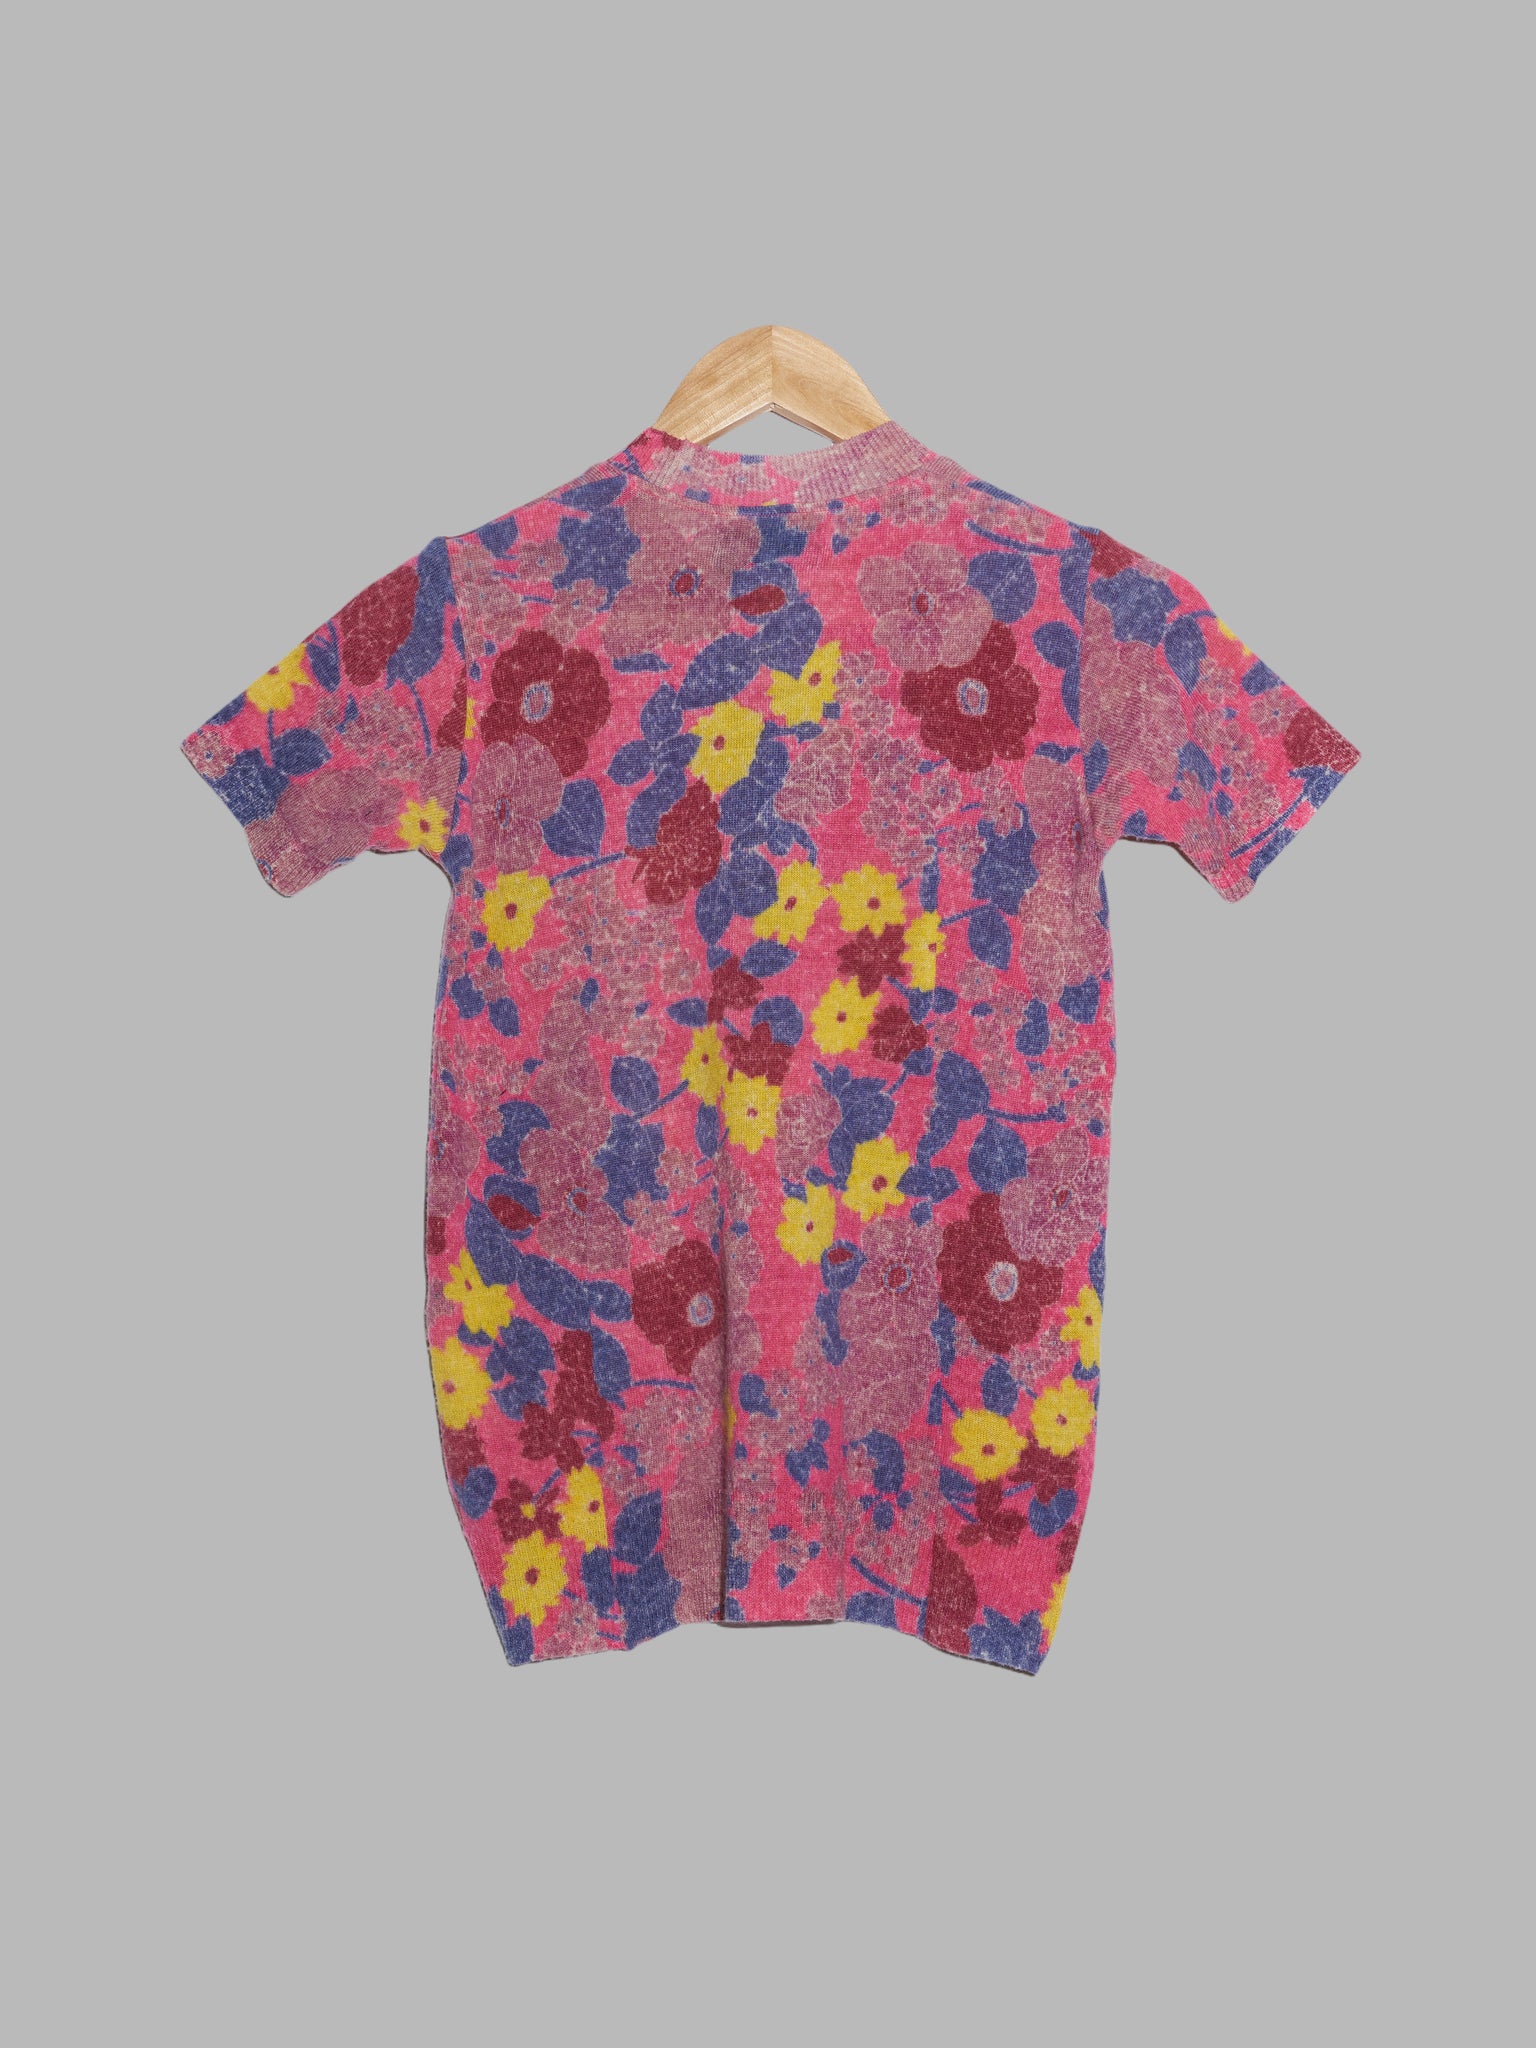 Tricot Comme des Garcons 1995 multi colour floral print wool knit t-shirt